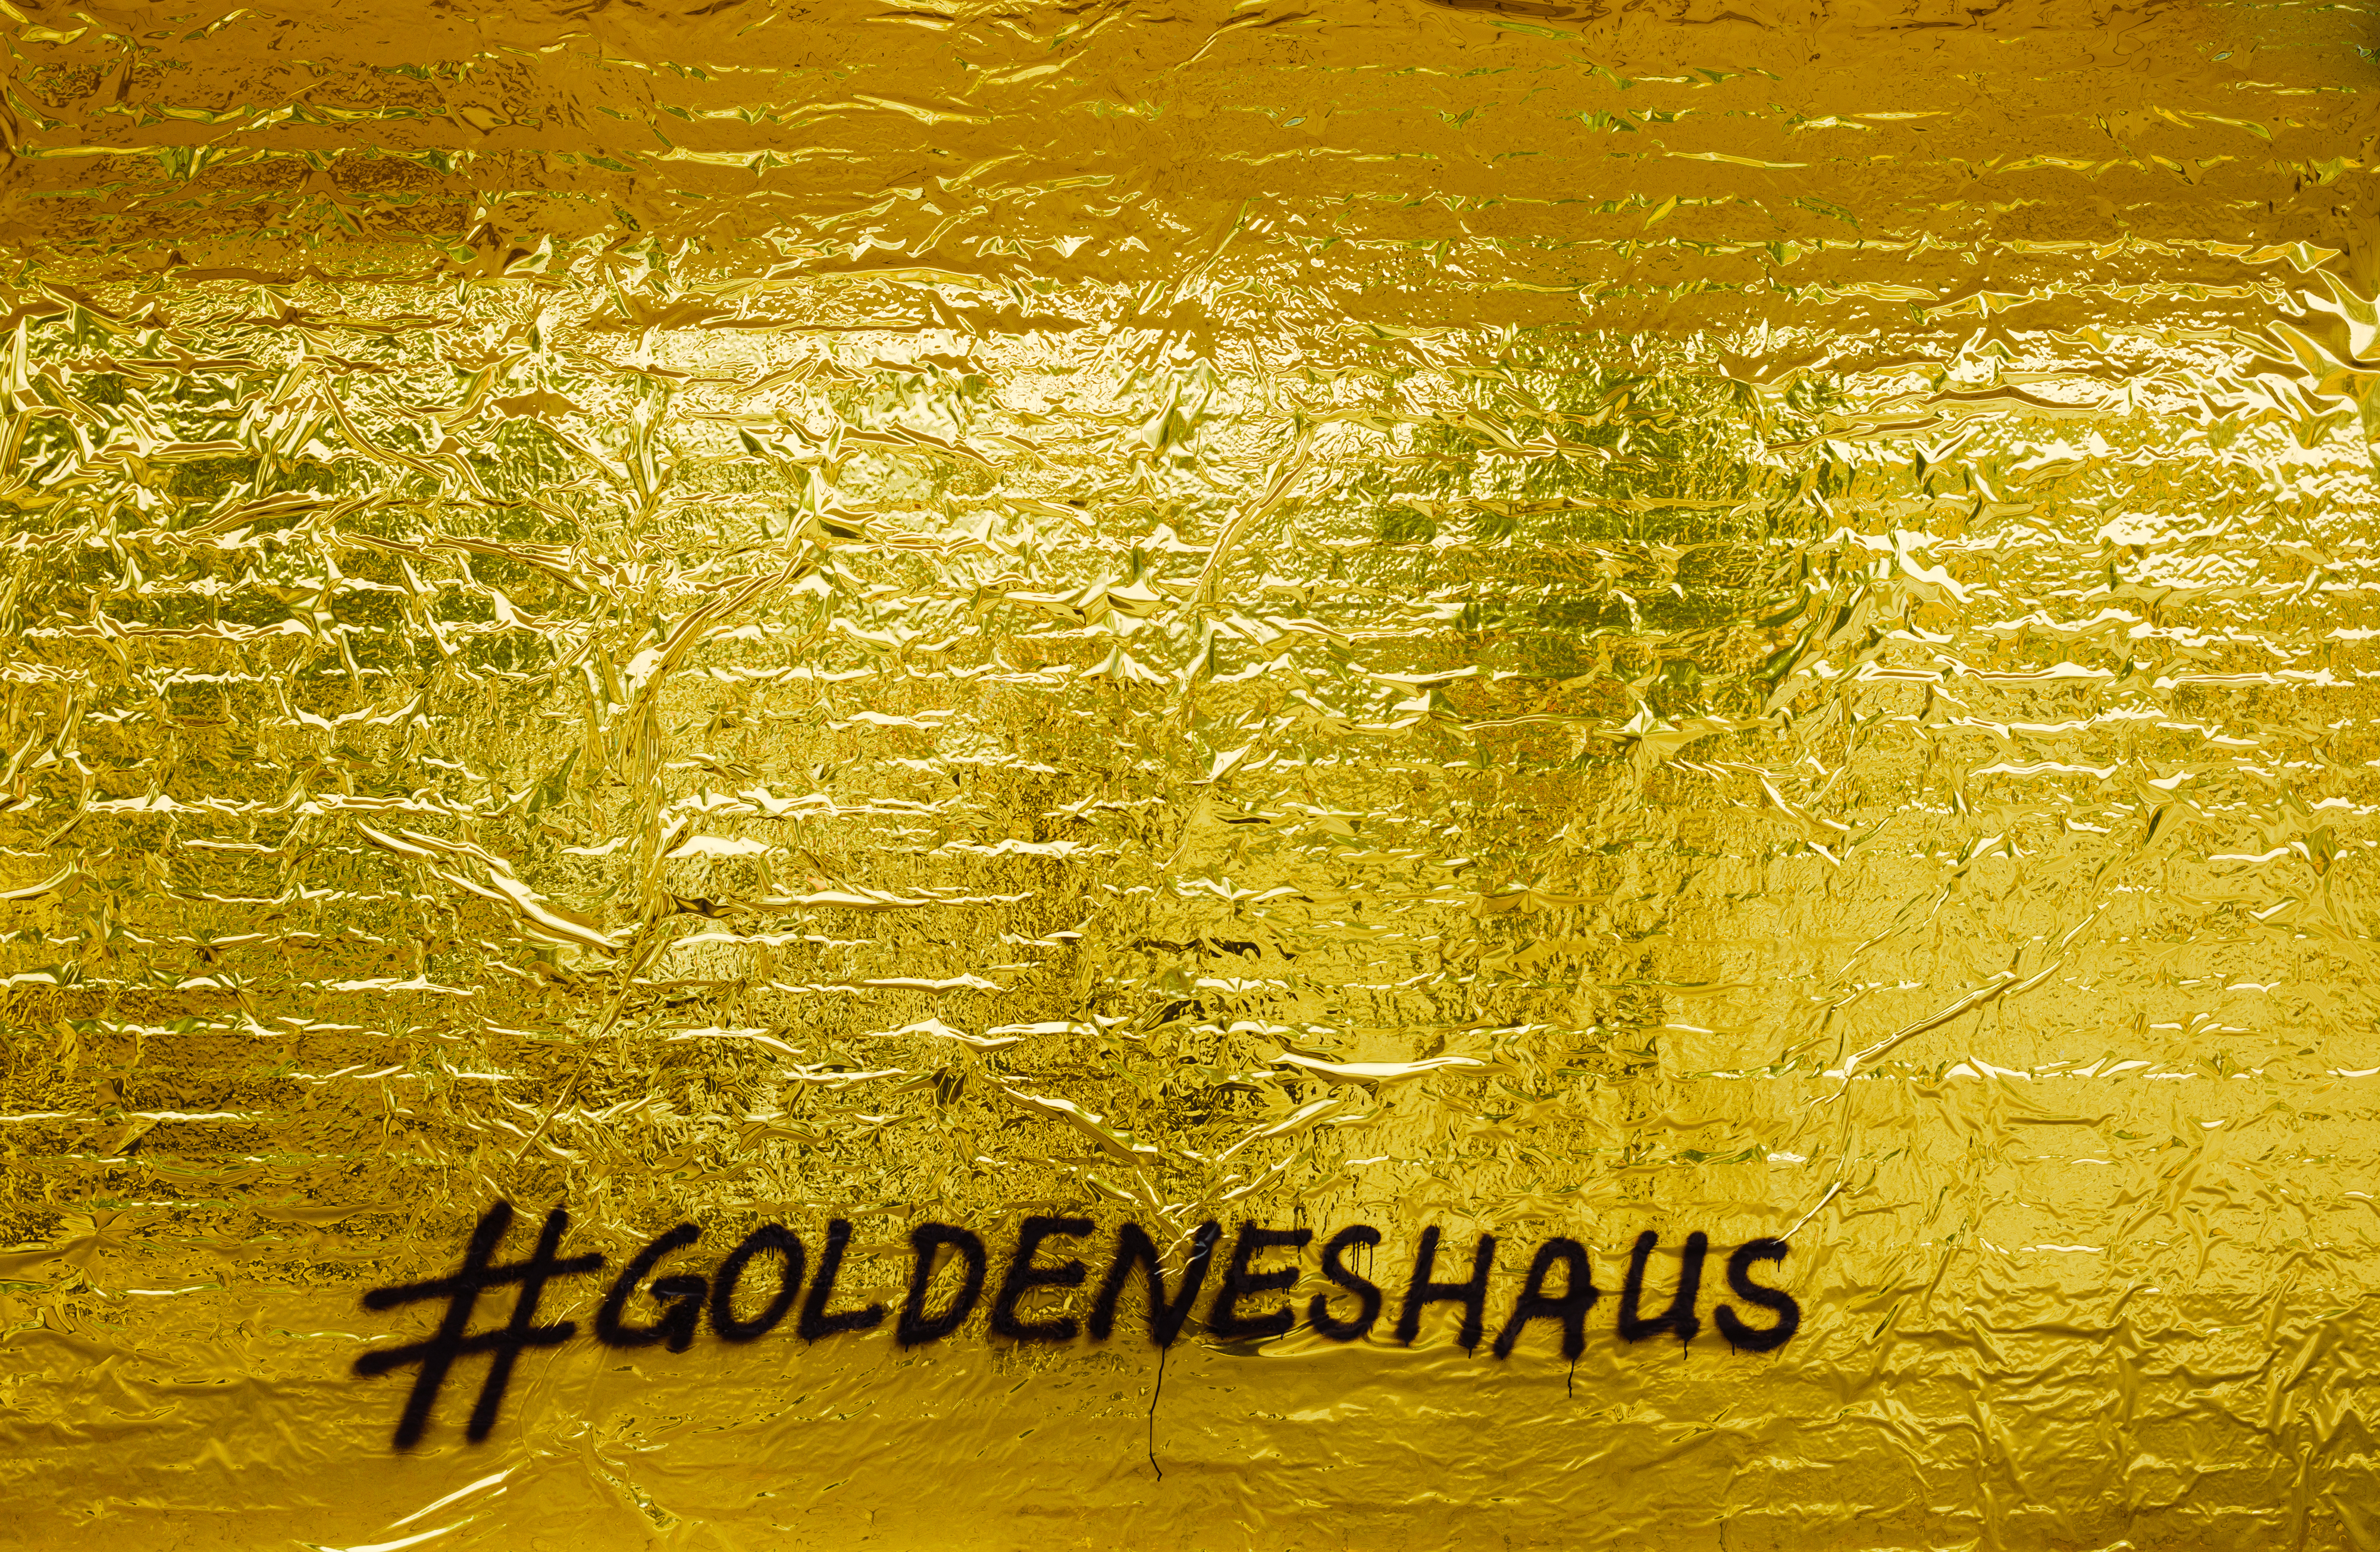 Eine goldene Wand auf der der Schriftzug #goldeneshaus zu lesen ist.